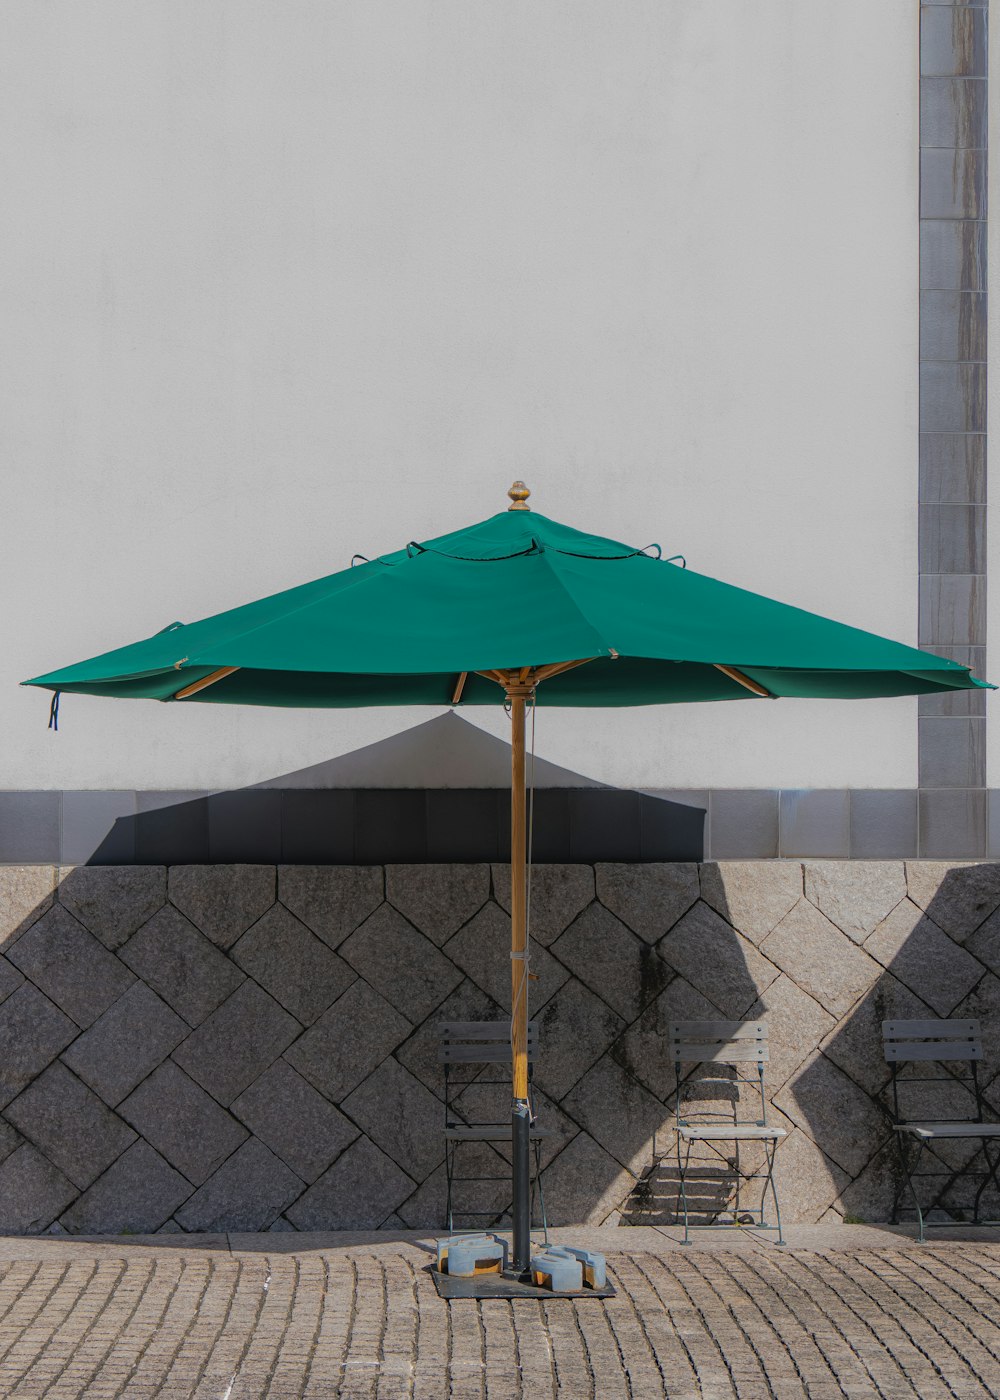 a green umbrella sitting on top of a sidewalk